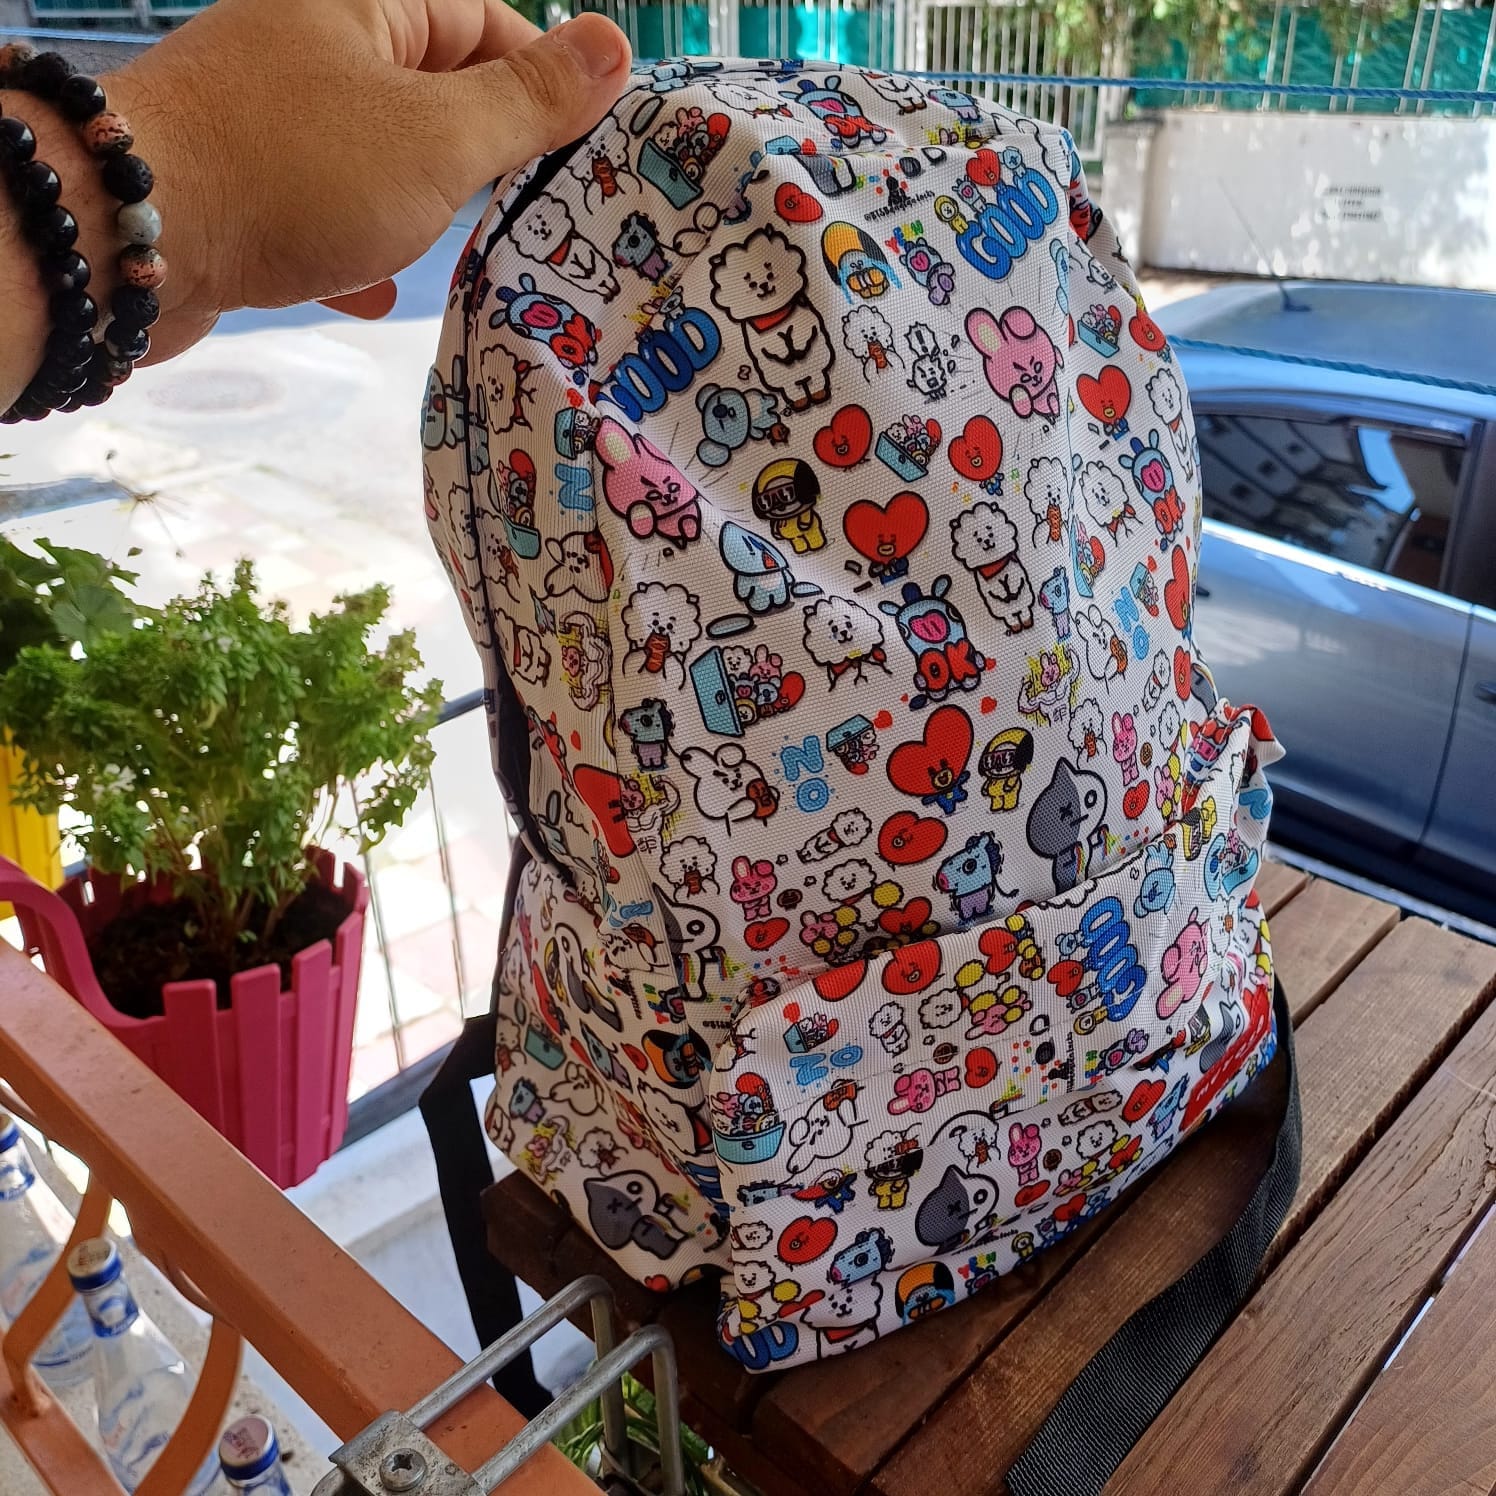 Buy Bts School Bag Online In India -  India